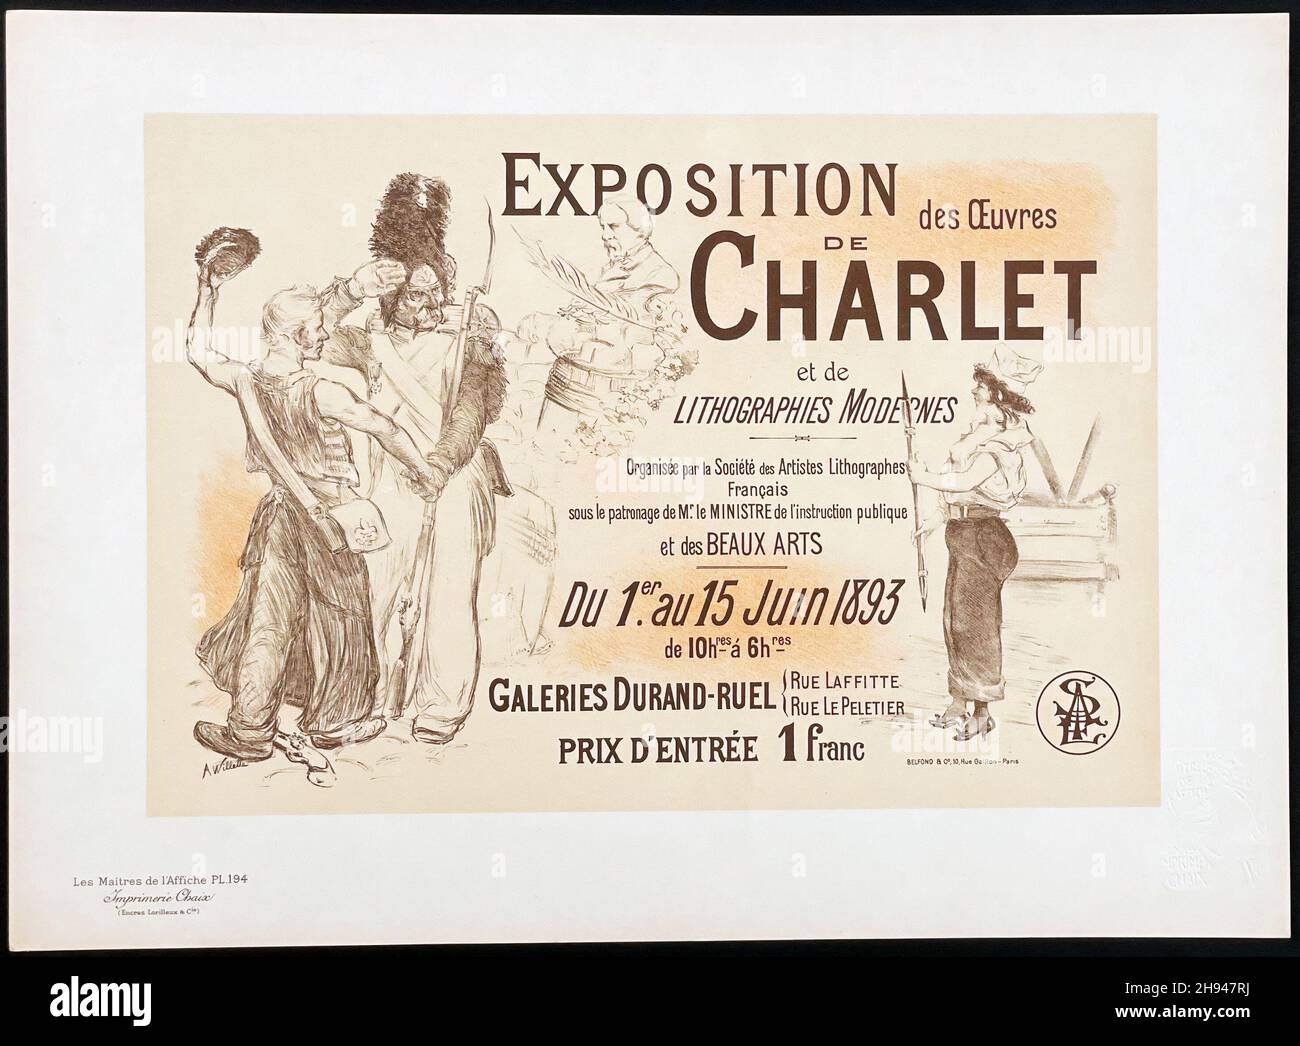 Exposition De Charlet Les Maitres De L'Affiche Plate #194, Artist:  Adolphe Willette. 1899. Stock Photo